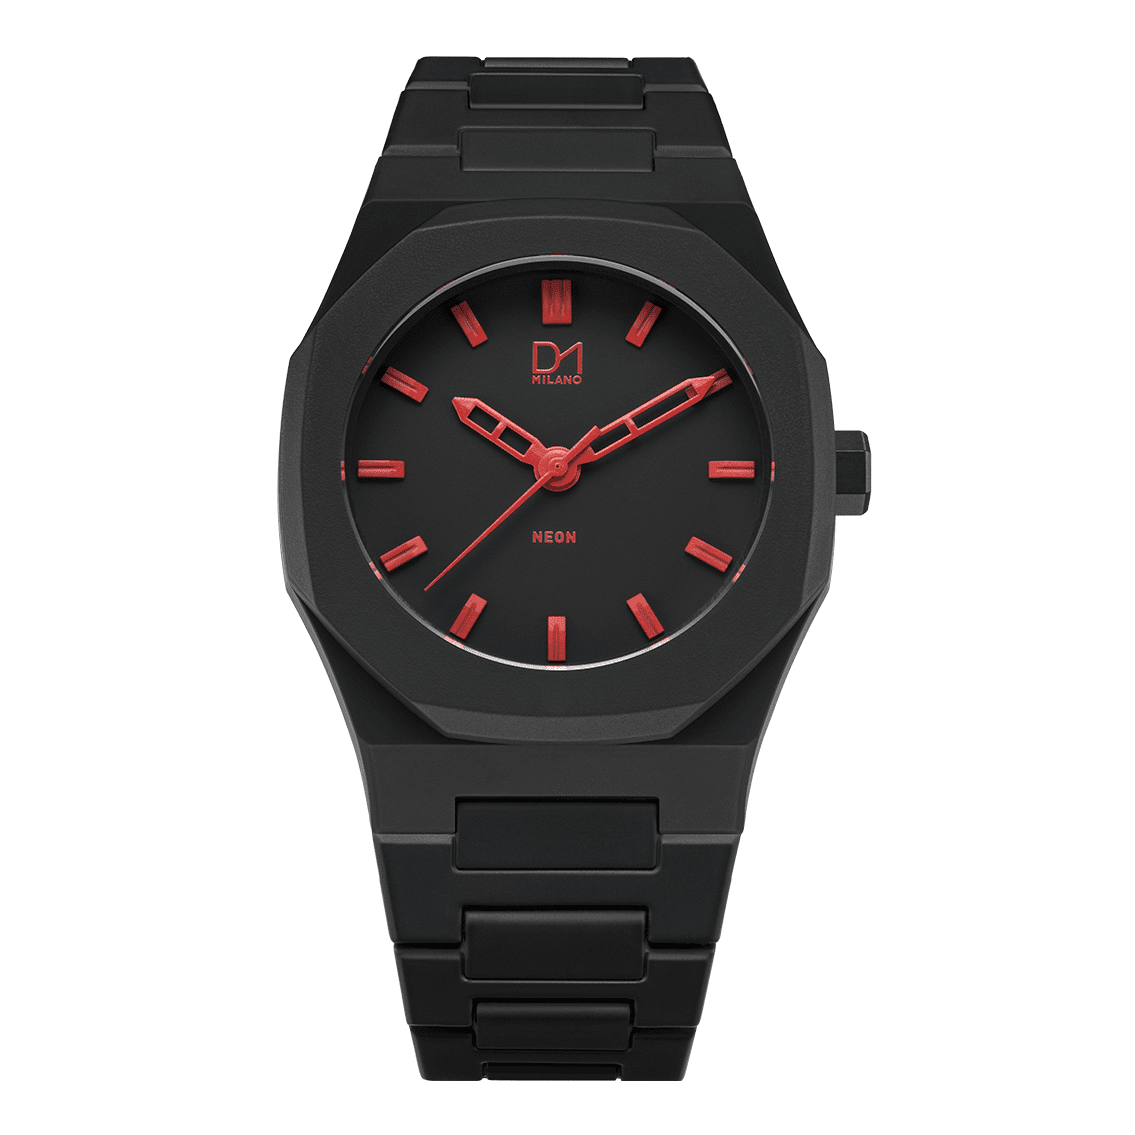 Unisex Polycarbon Watch D1-A-NE03 D1 Milano